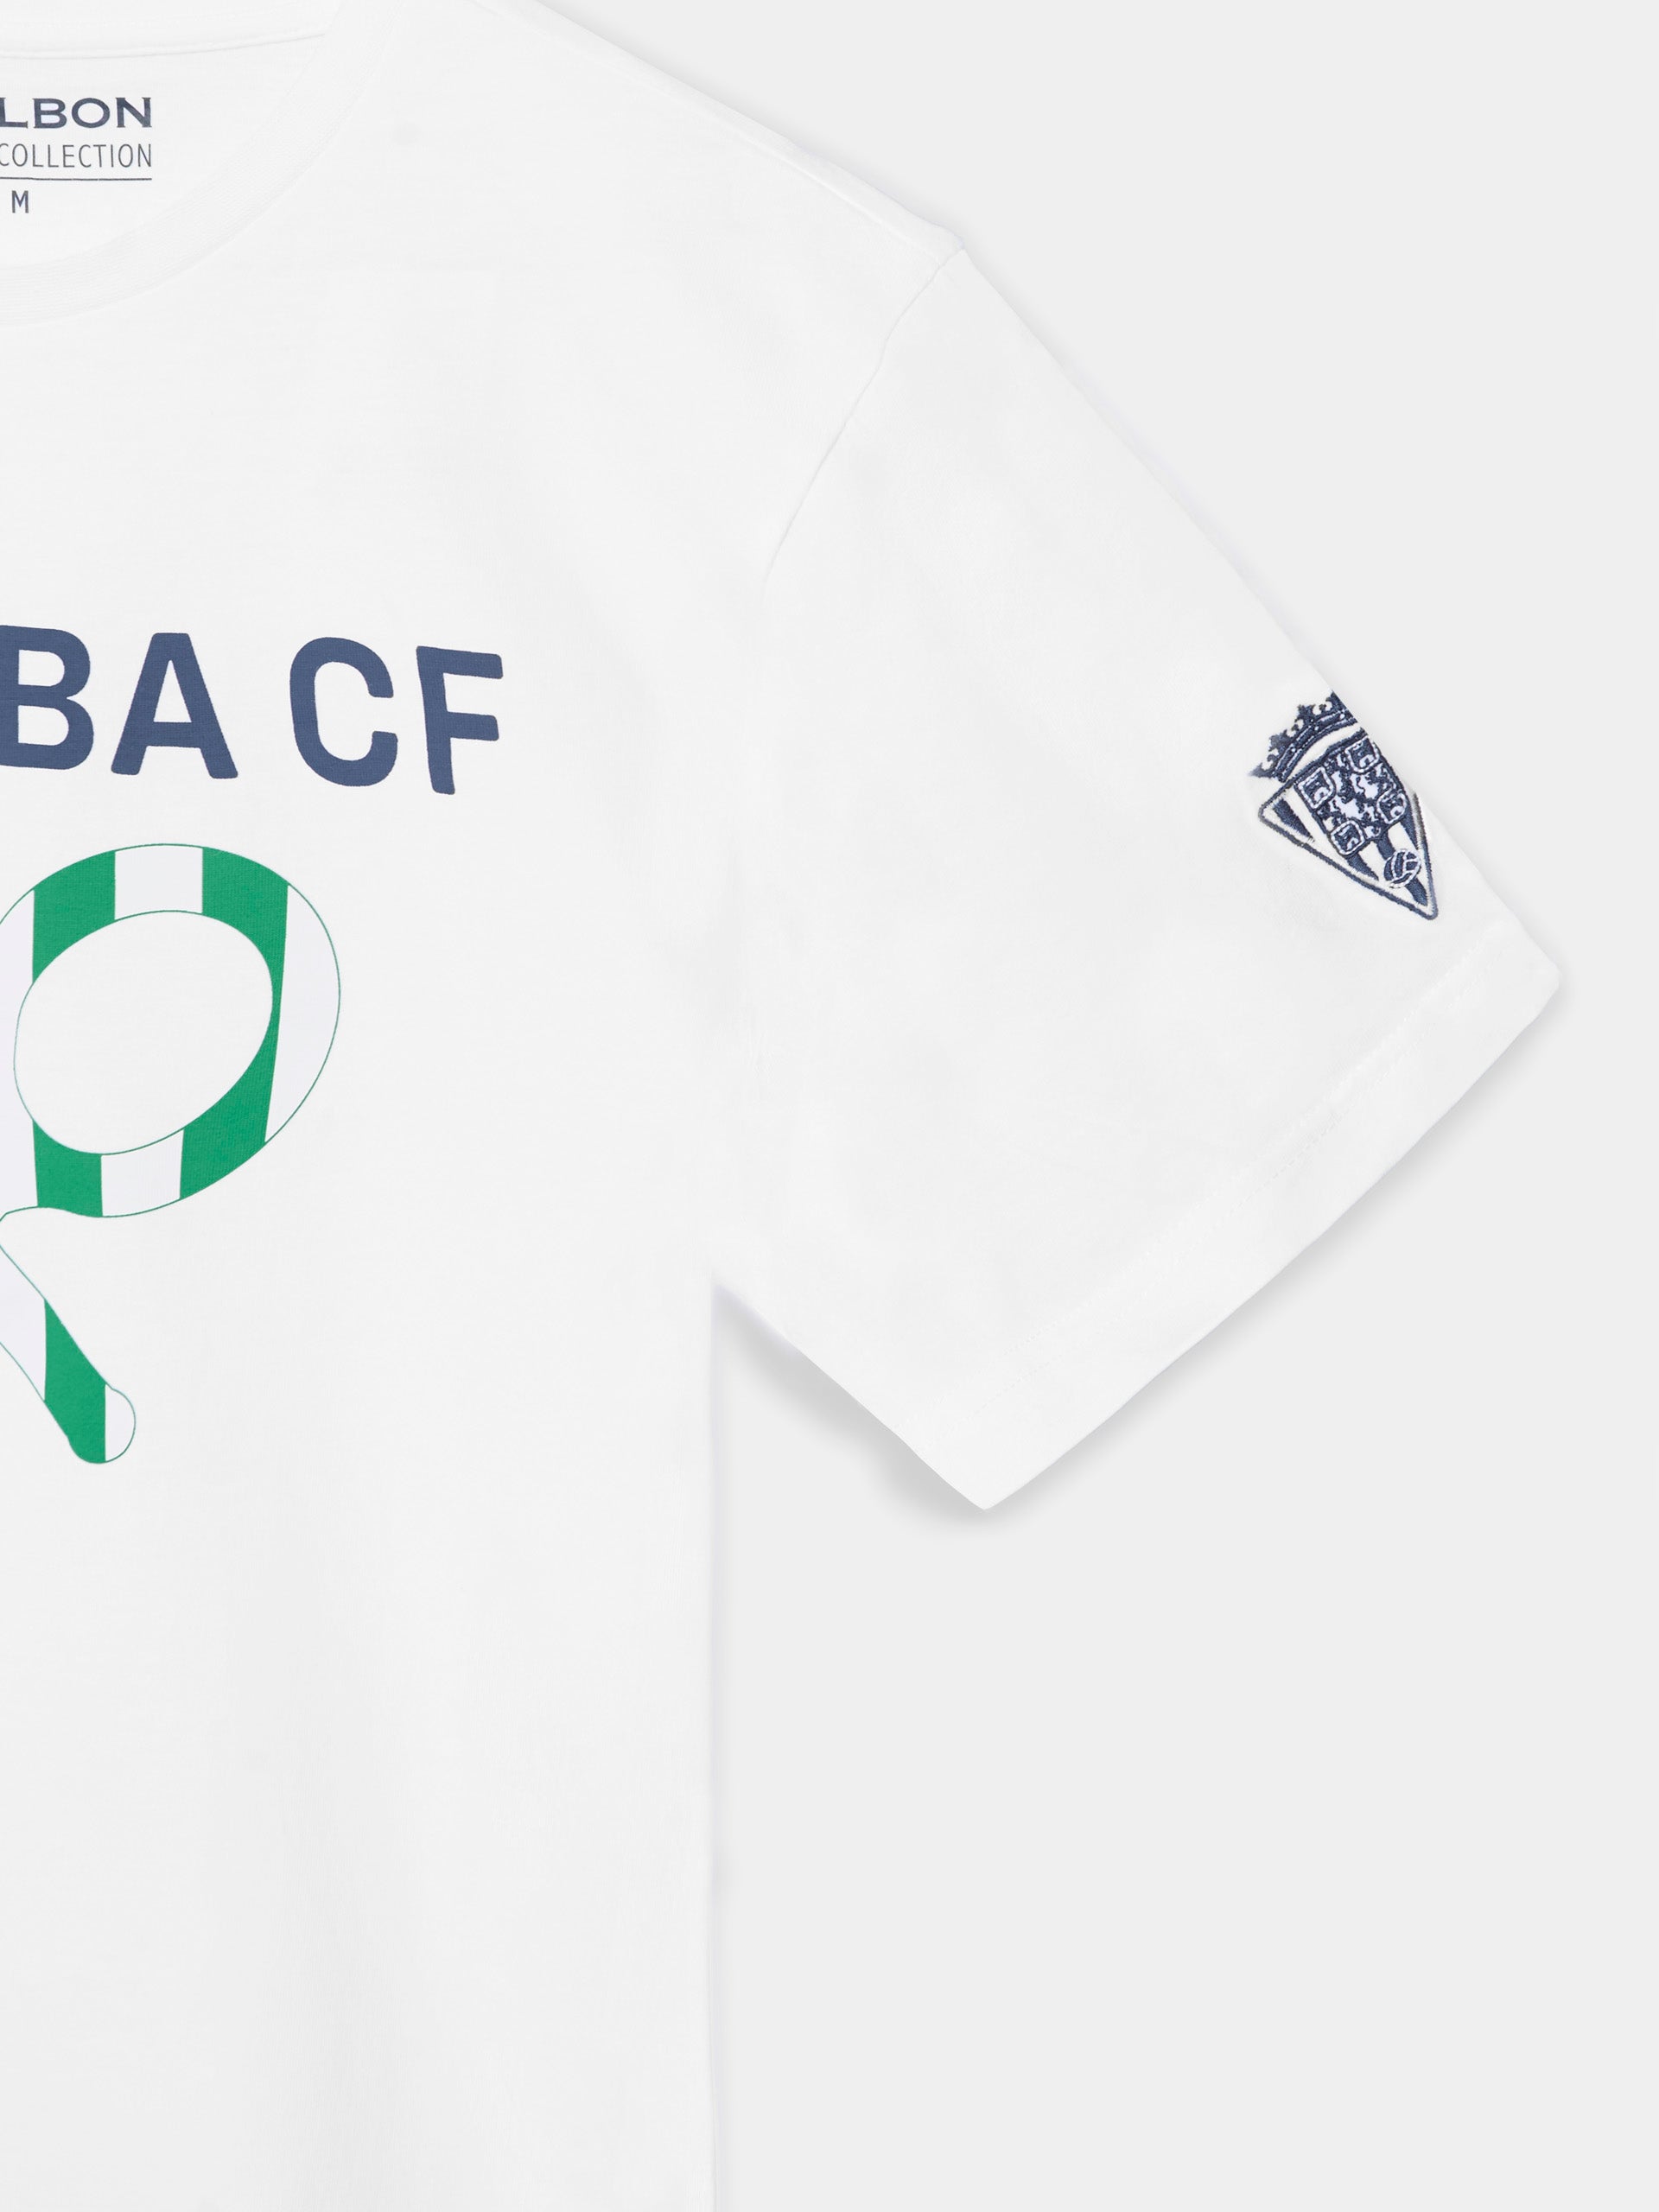 Cordoba CF white t-shirt